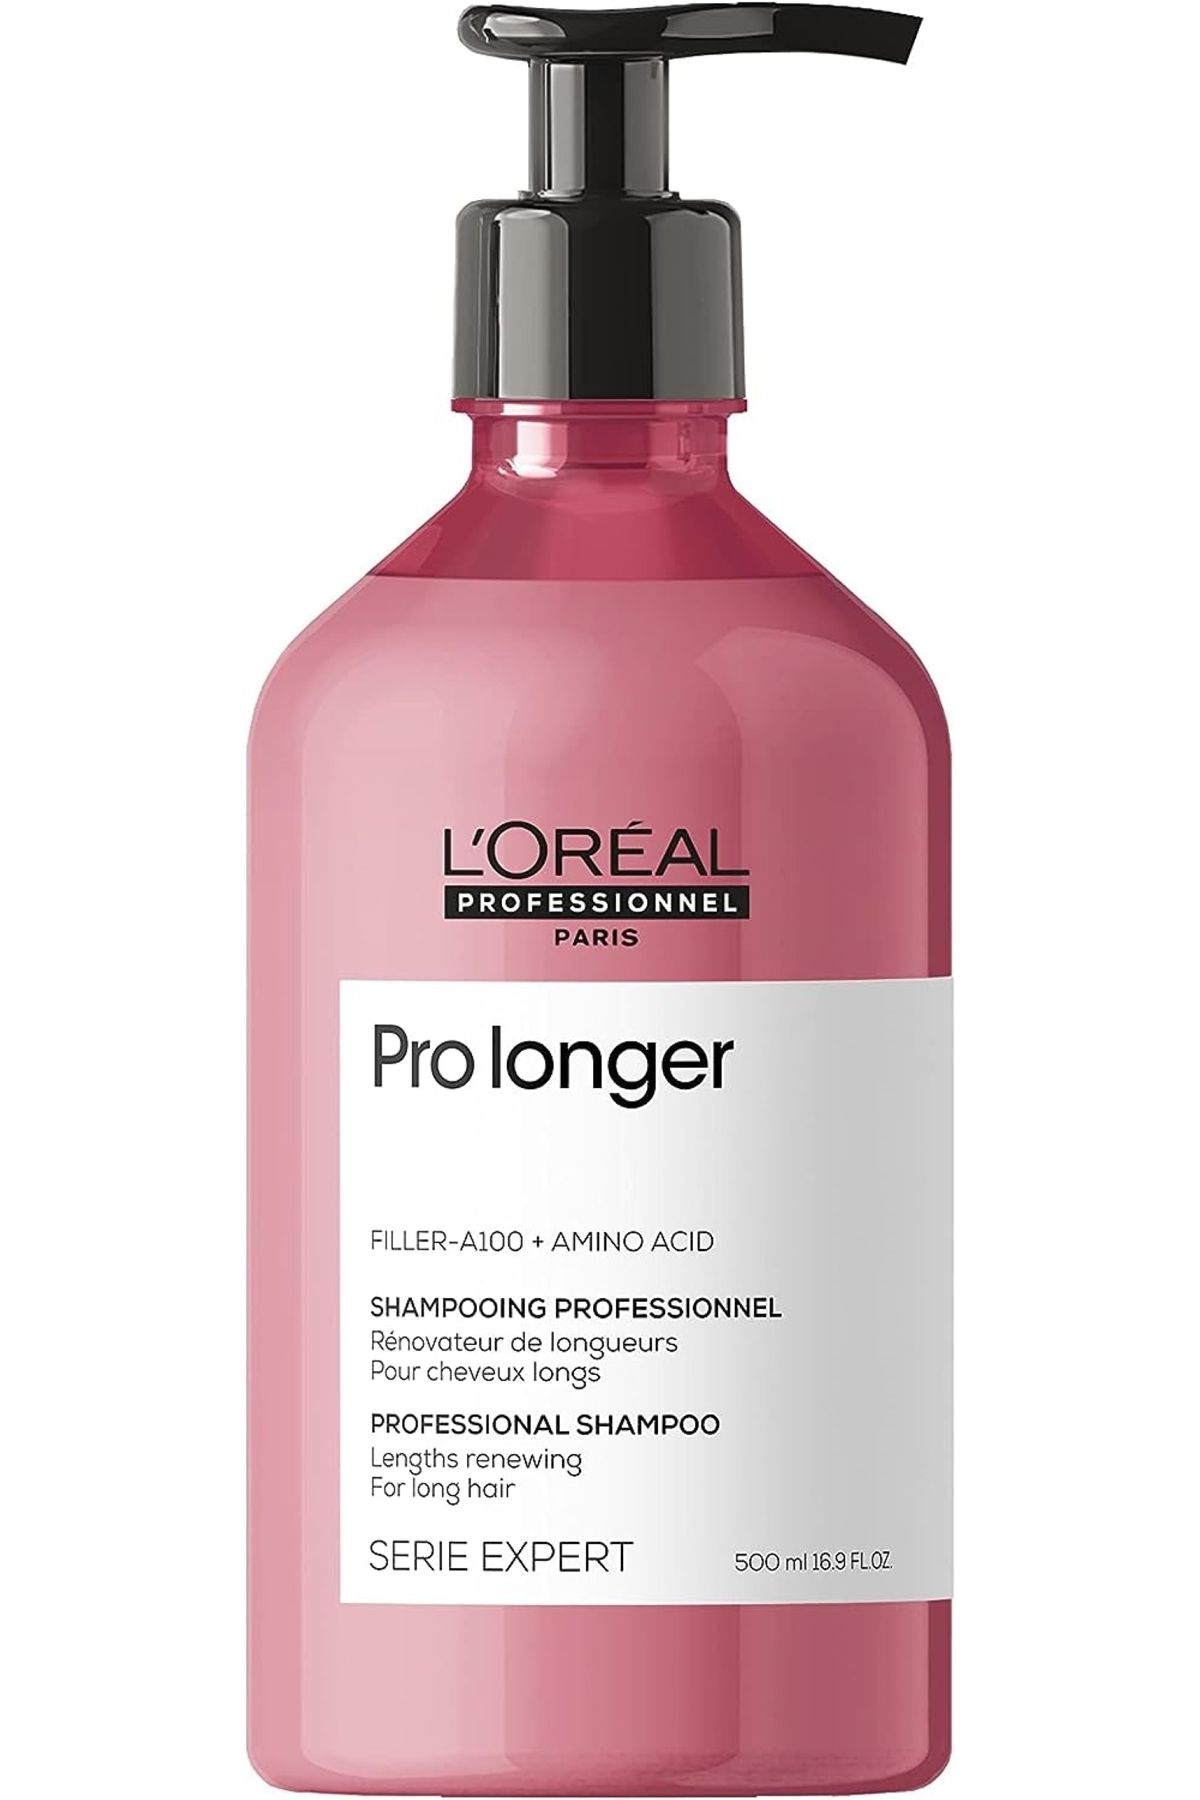 L'oreal Professionnel LOREAL Pro Longer Uzun Saçlar İçin Yenileyici -Besleyici Bakım Şampuanı 500mlSED45963325664572226632